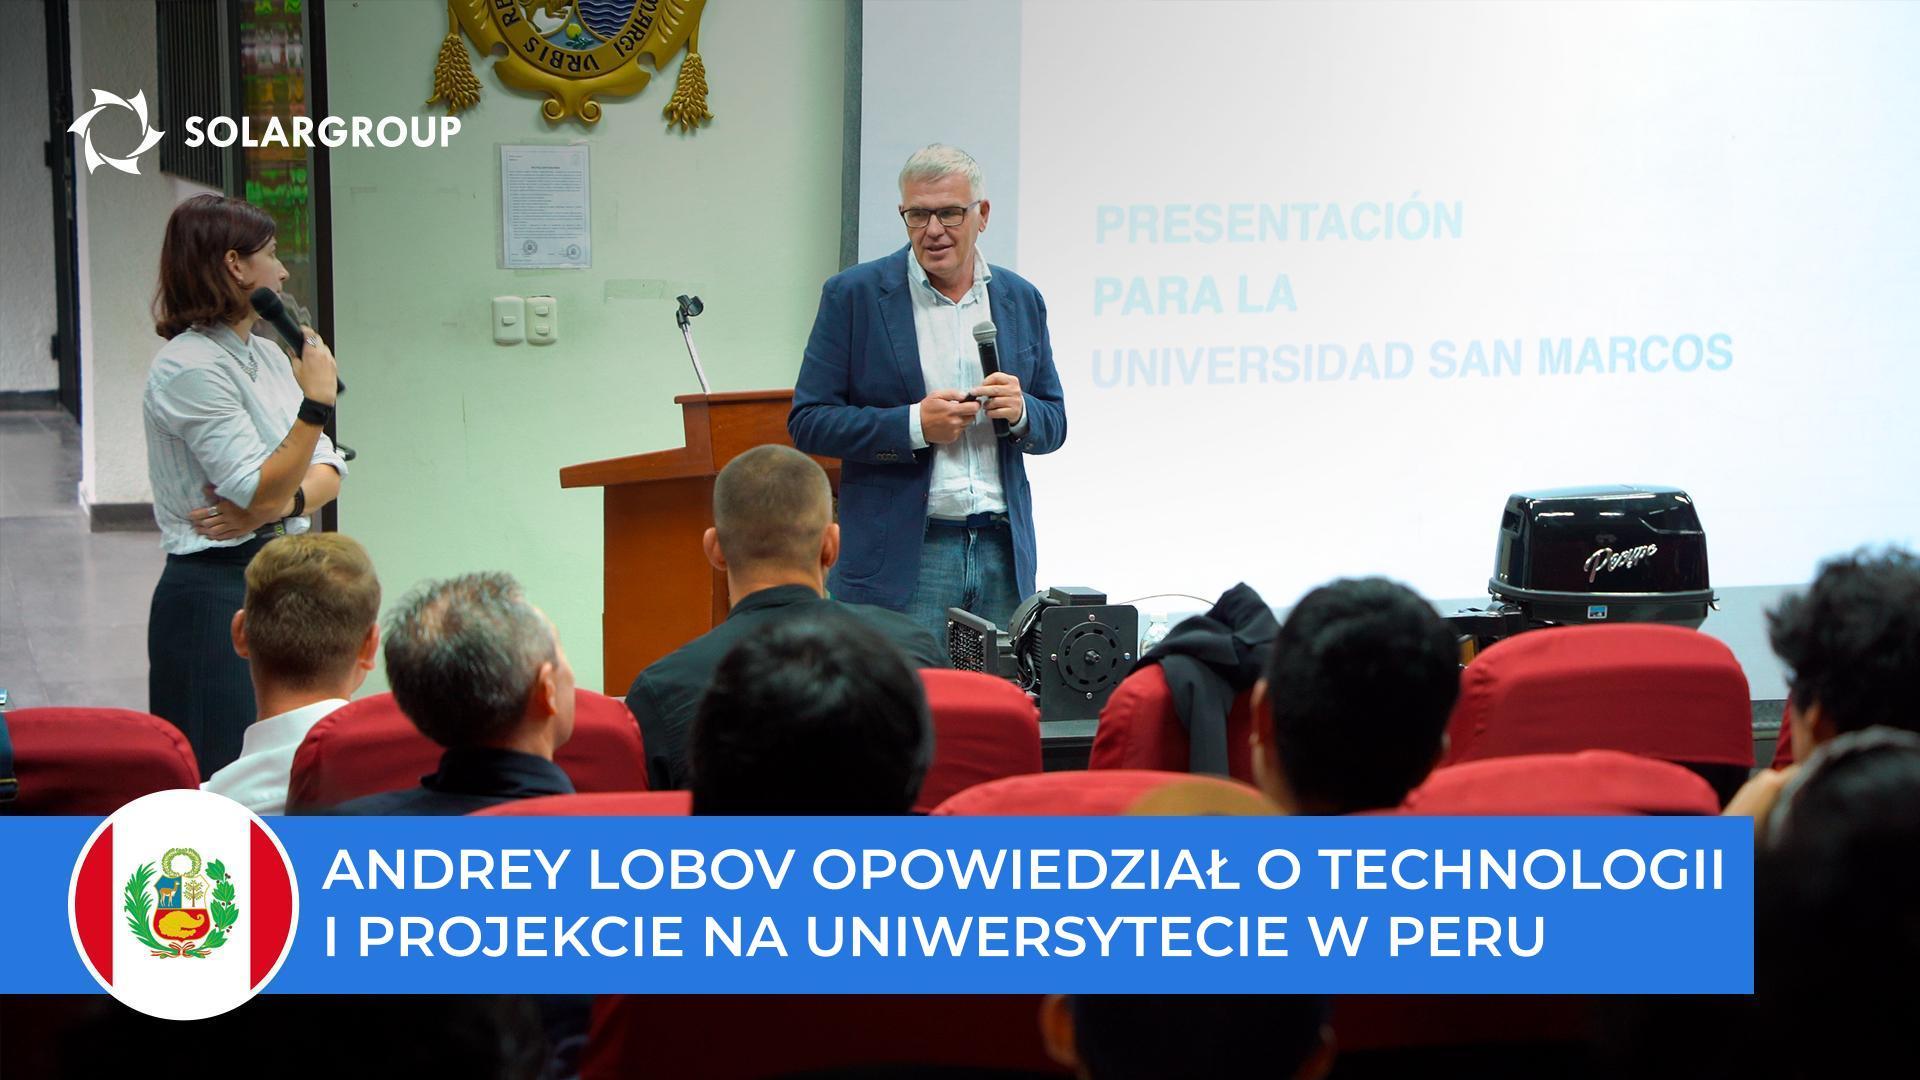 Andrey Lobov opowiedział o technologii i projekcie studentom i profesorom Uniwersytetu San Marcos